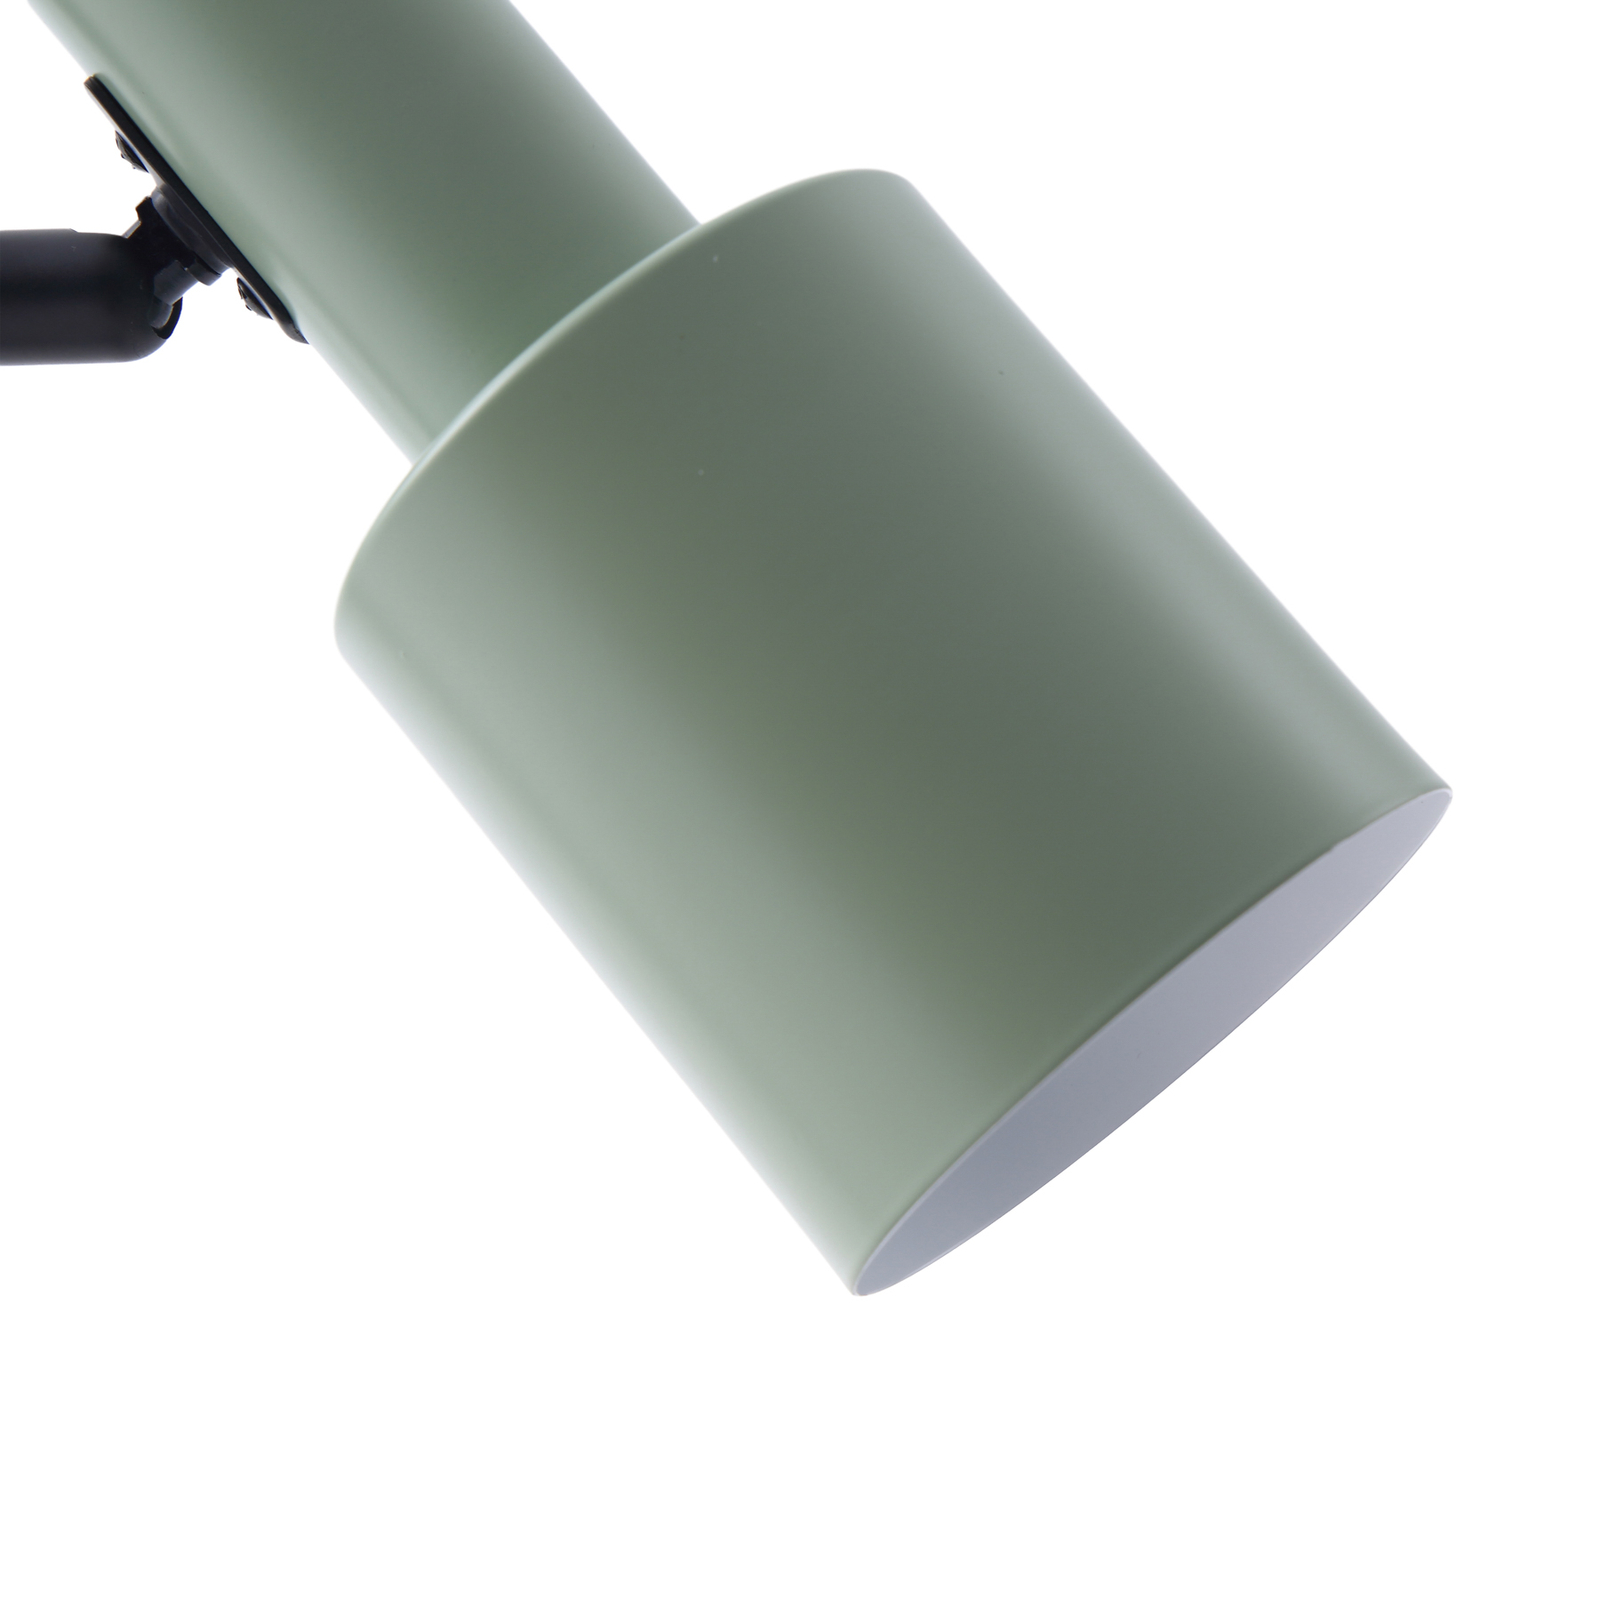 Lindby lampe à poser Ovelia, vert/noir, fer, E27